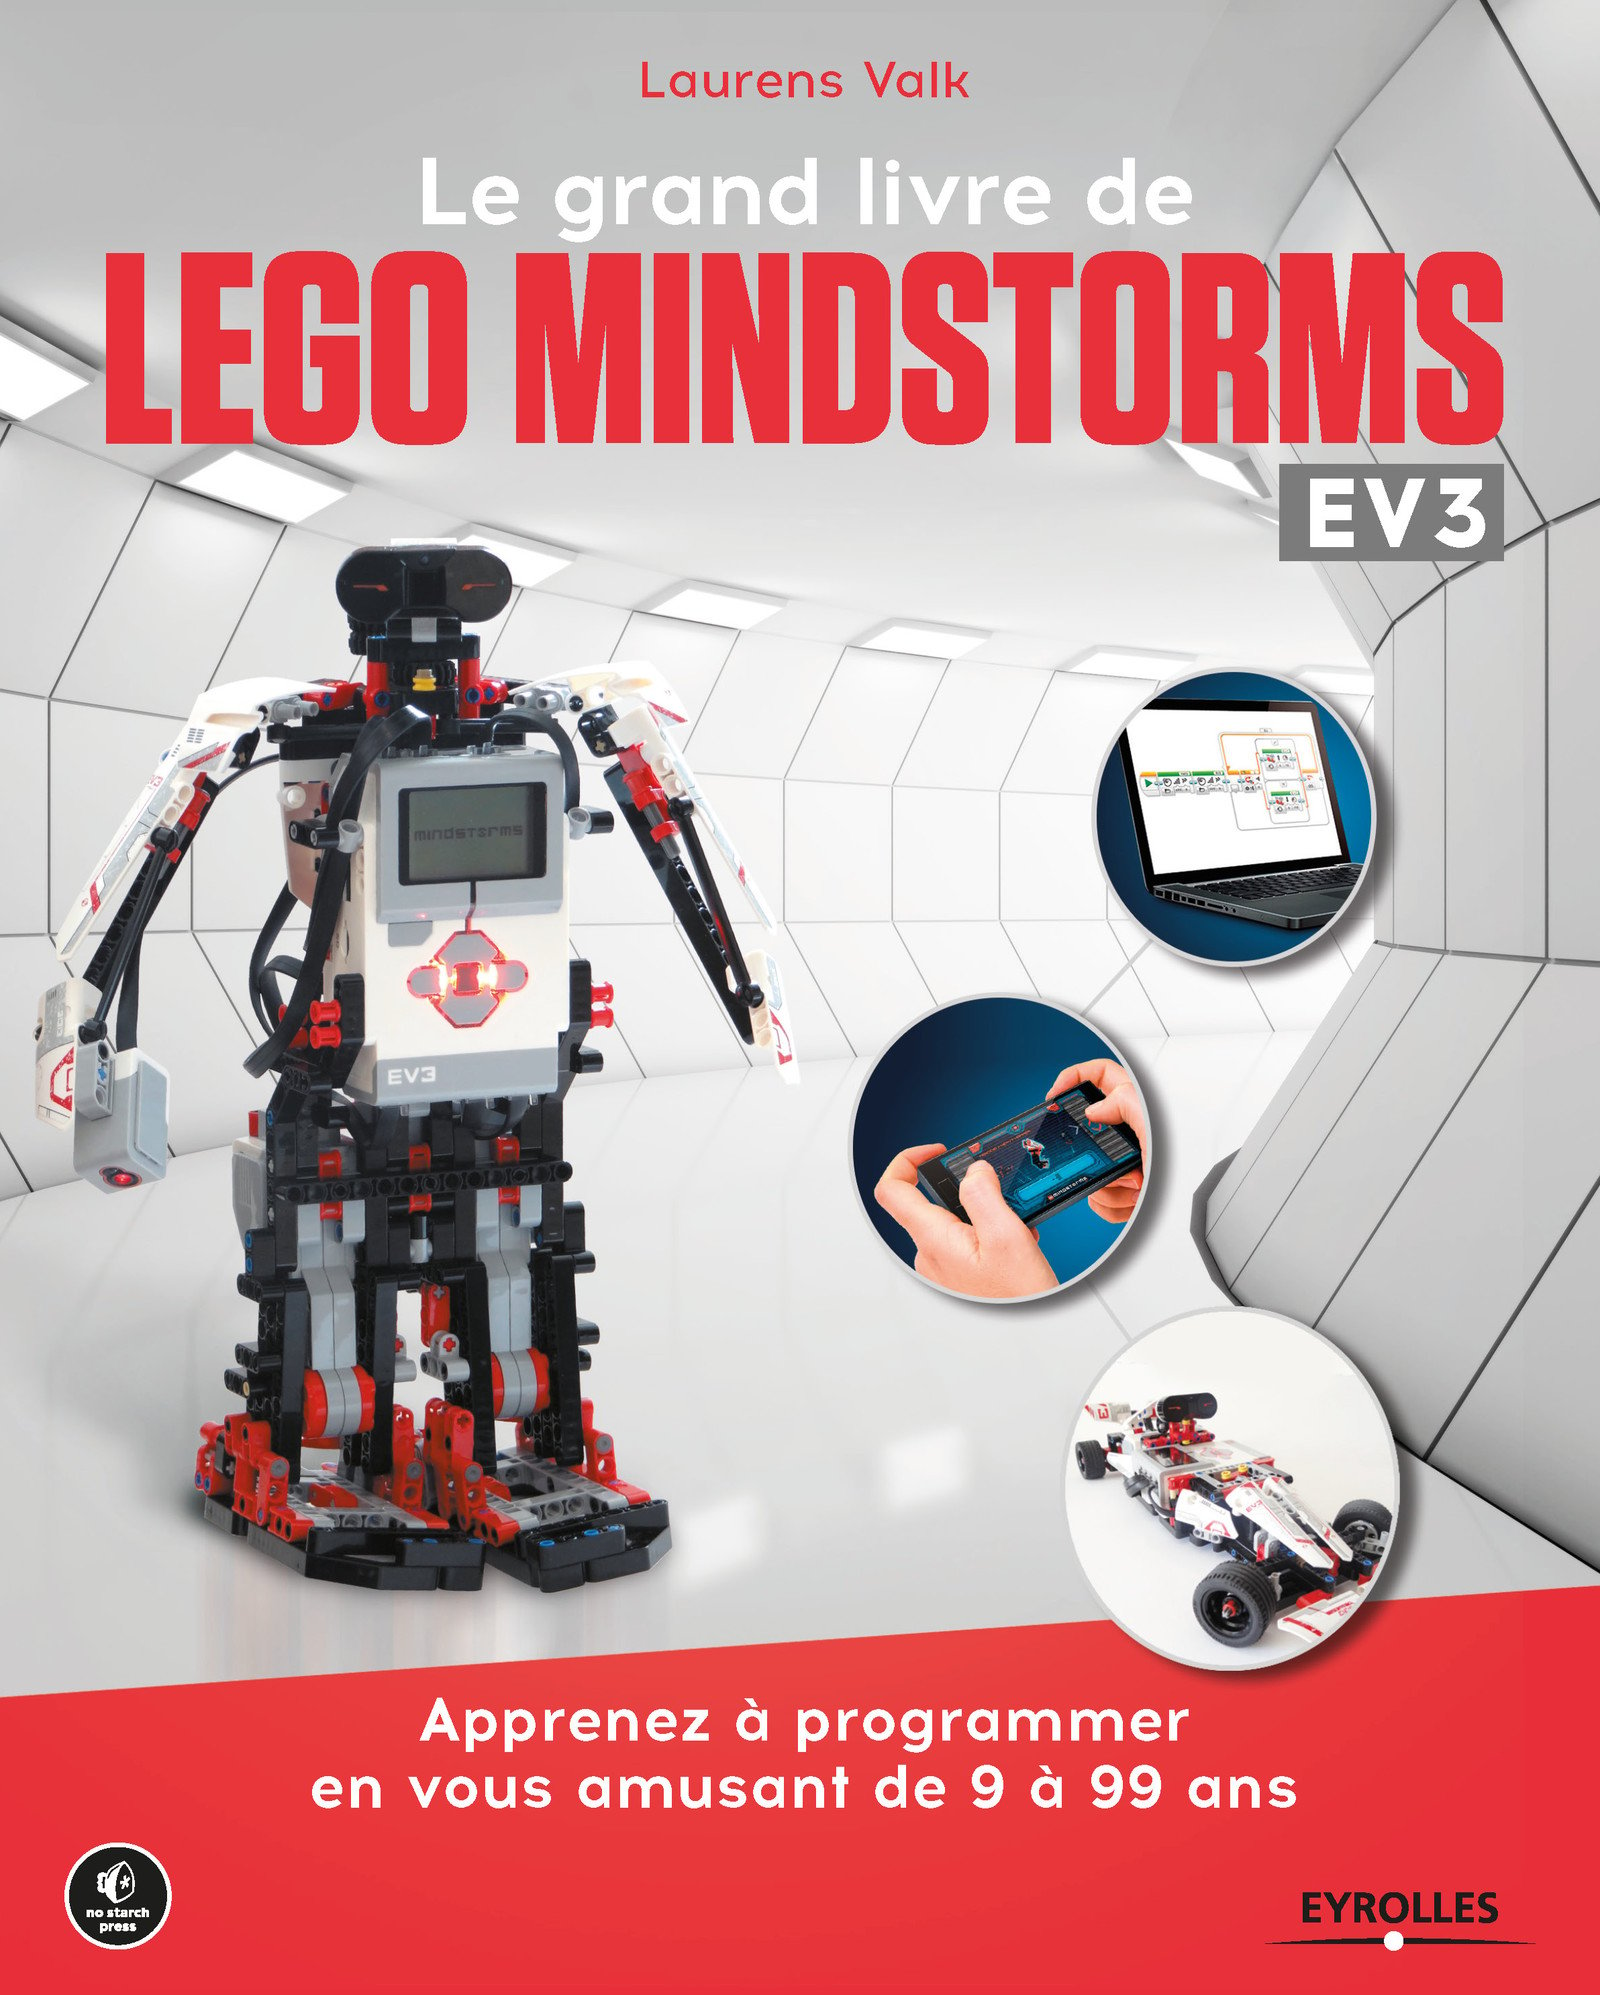 Le grand livre de Lego Mindstorms EV3 - Apprenez à programmer en vous amusant de 9 à 99 ans